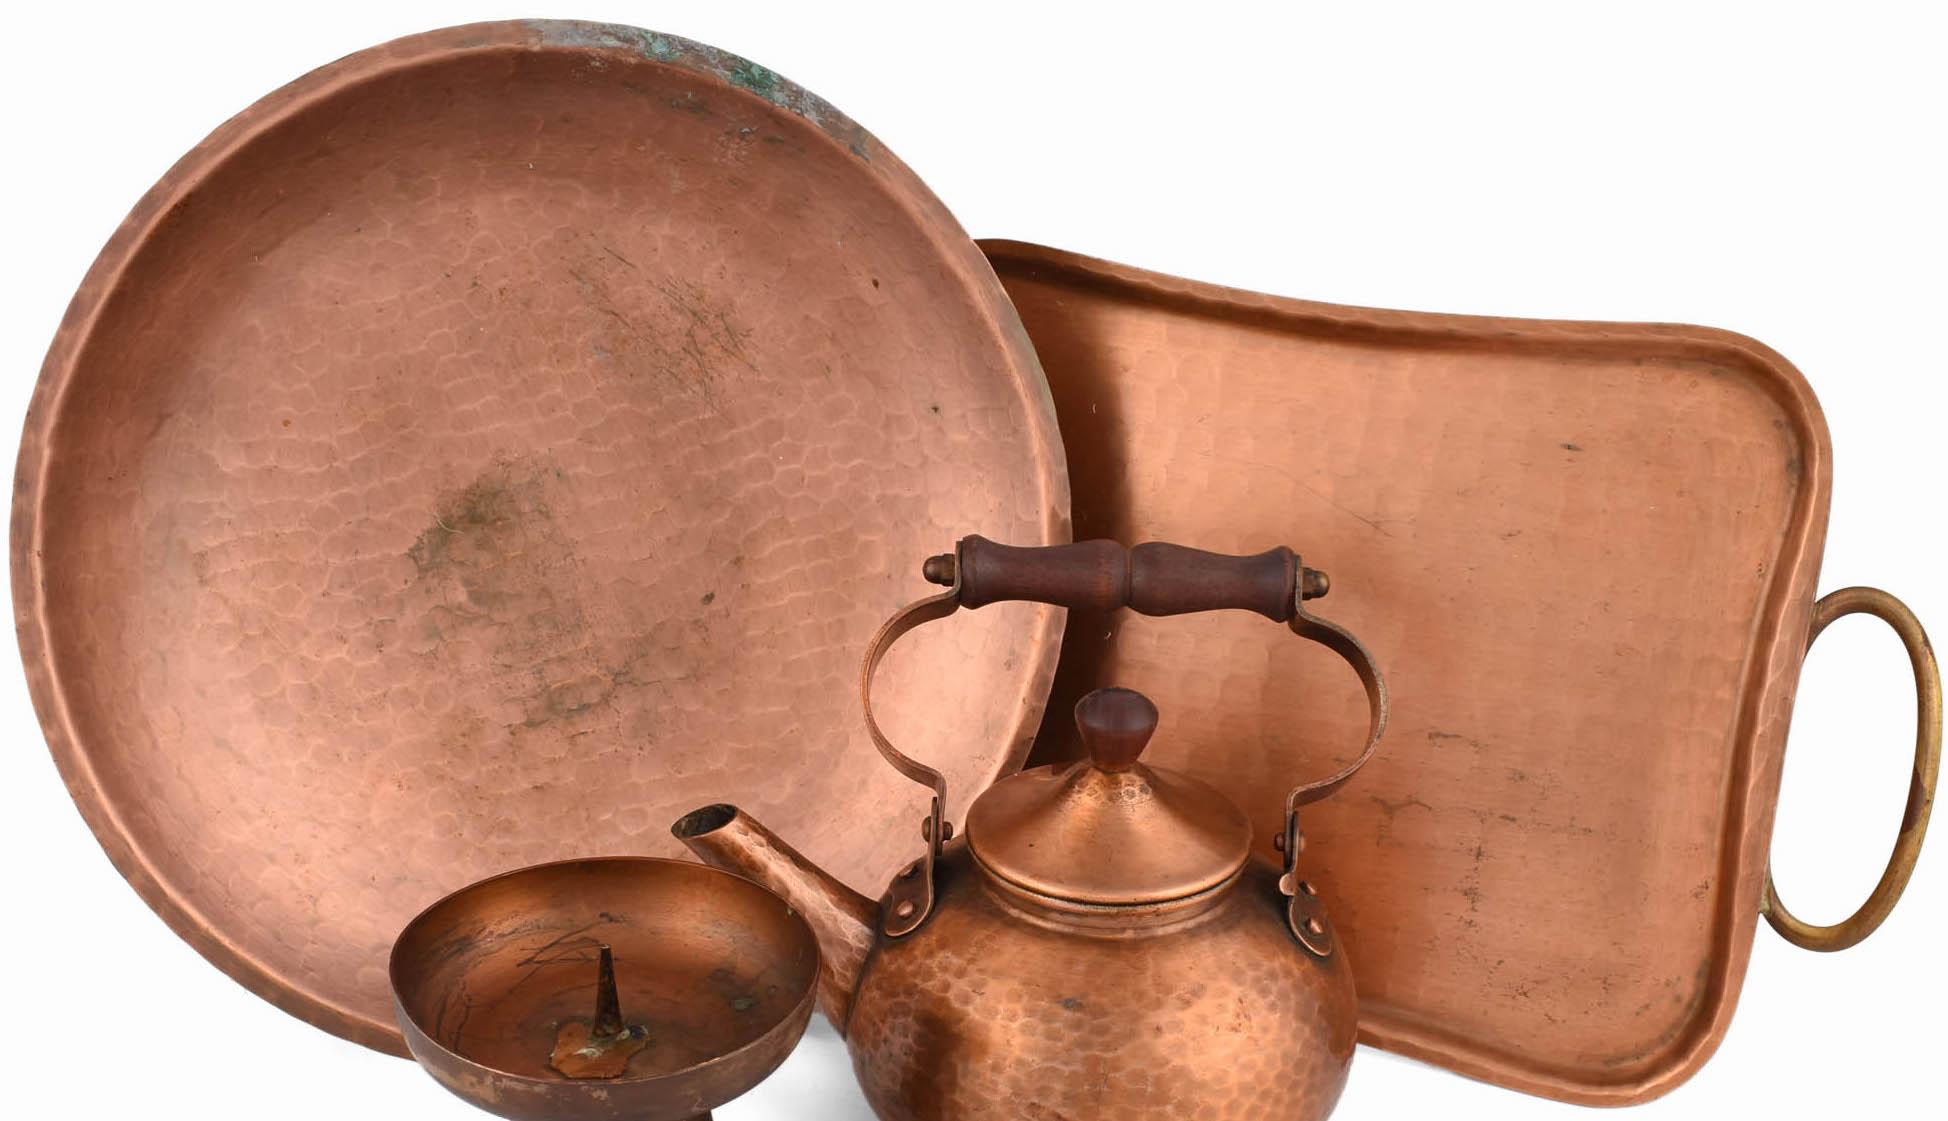 Das Kupferset von Eugen Zint ist eine originelle Gruppe von Objekten, die in den 1950er Jahren entstanden ist.

Das Set besteht aus einem rechteckigen Tablett mit Messinggriffen, einem Kerzenständer, einer Teekanne und einer runden Schale. 

Das